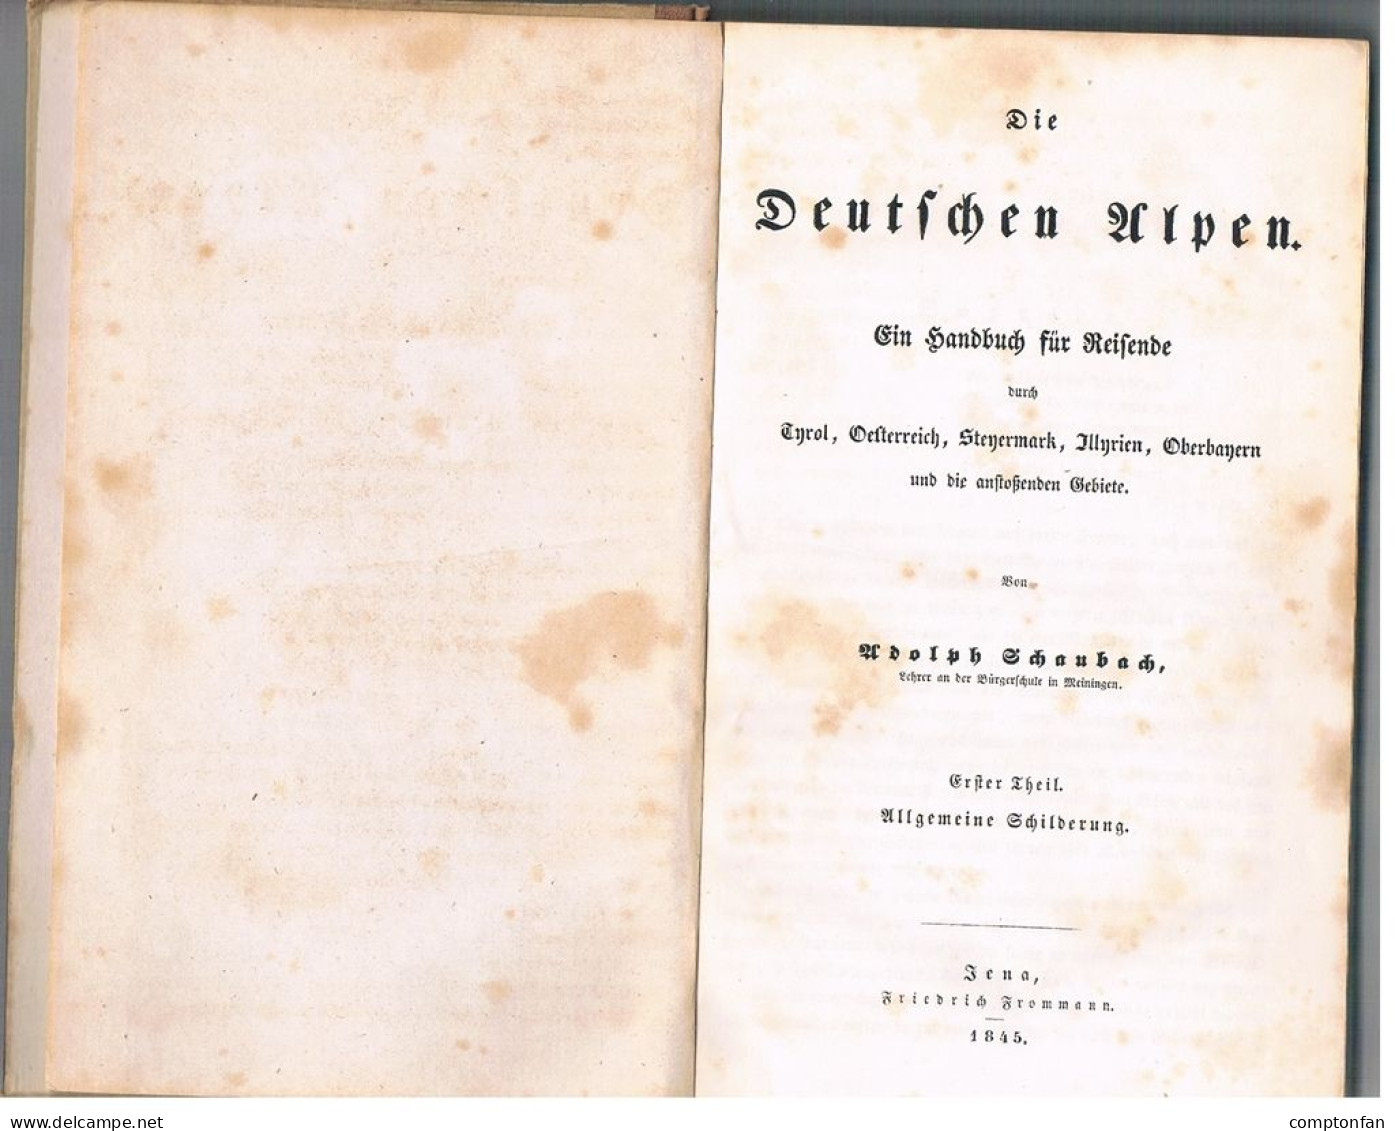 B100 898 Schaubach Tirol Steiermark Bayern Dalmatien Ausgabe1845 Rarität ! - Livres Anciens